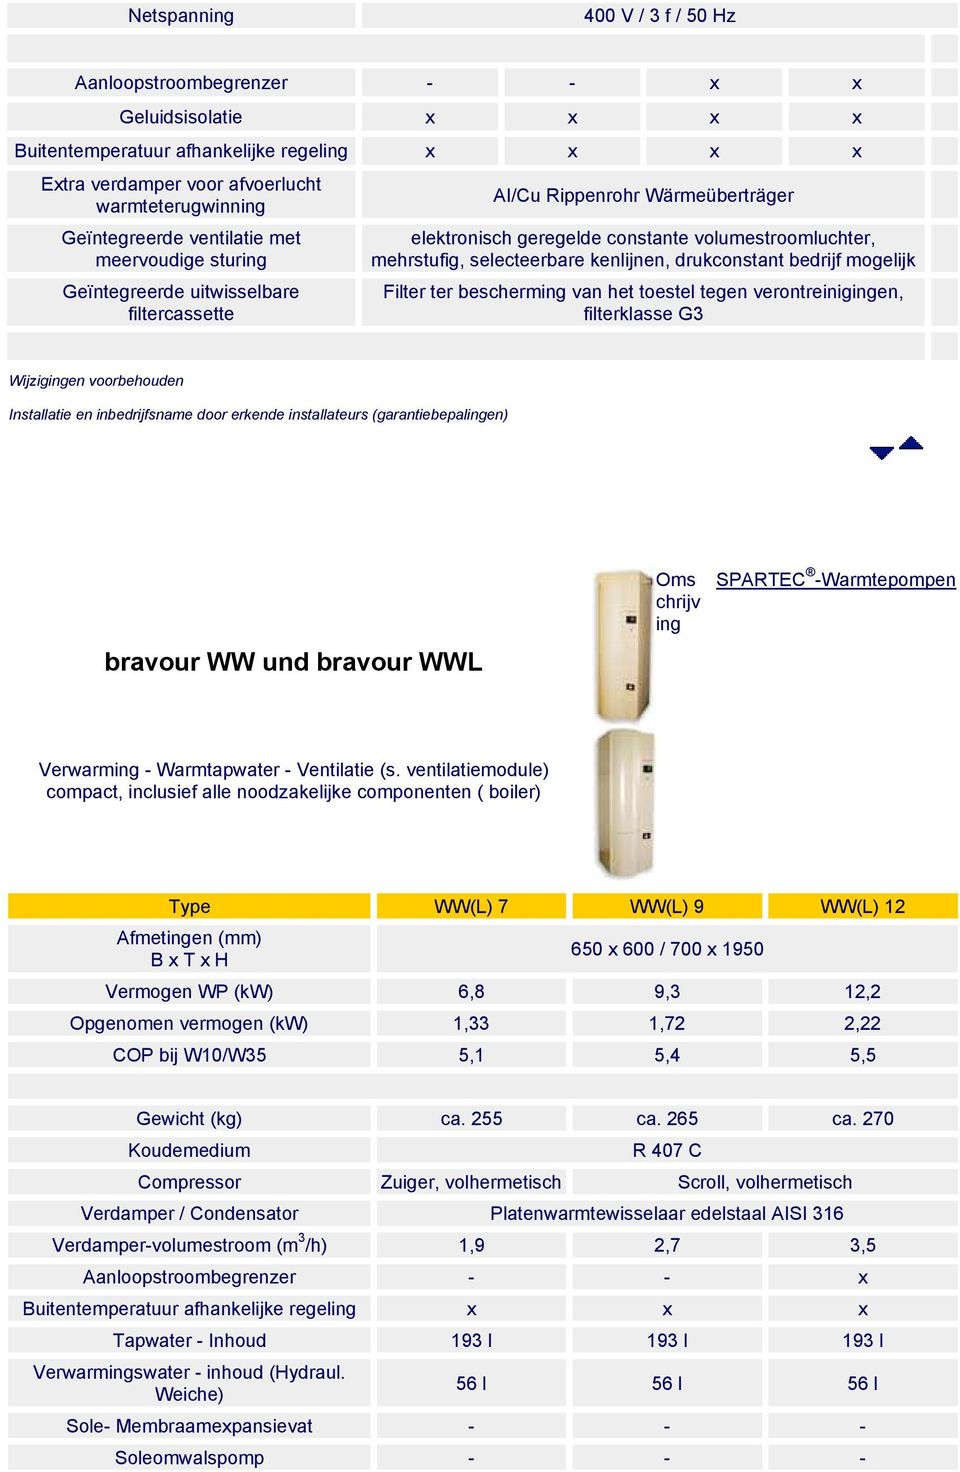 drukconstant bedrijf moelijk Filter ter beschermin van het toestel teen verontreiniinen, filterklasse G3 bravour WW und bravour WWL Oms chrijv in Verwarmin - Warmtapwater - Ventilatie (s.